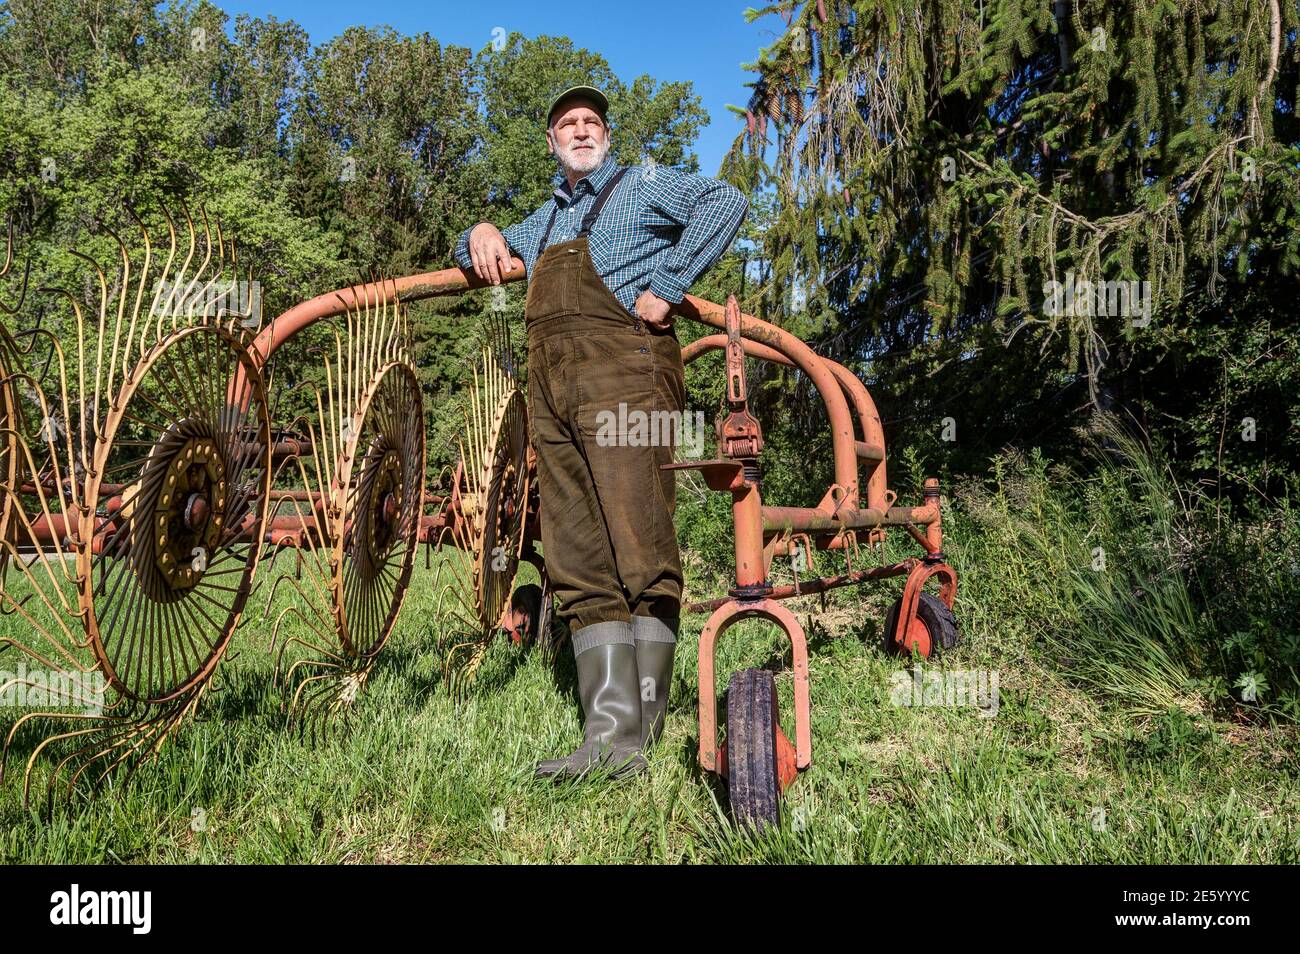 Un agricultor orgánico con lungareos y botas de goma se encuentra en su antiguo rastrillo de la rueda de la estrella después de la cosecha de heno y mira cuidadosamente sobre su tierra de cultivo. Foto de stock